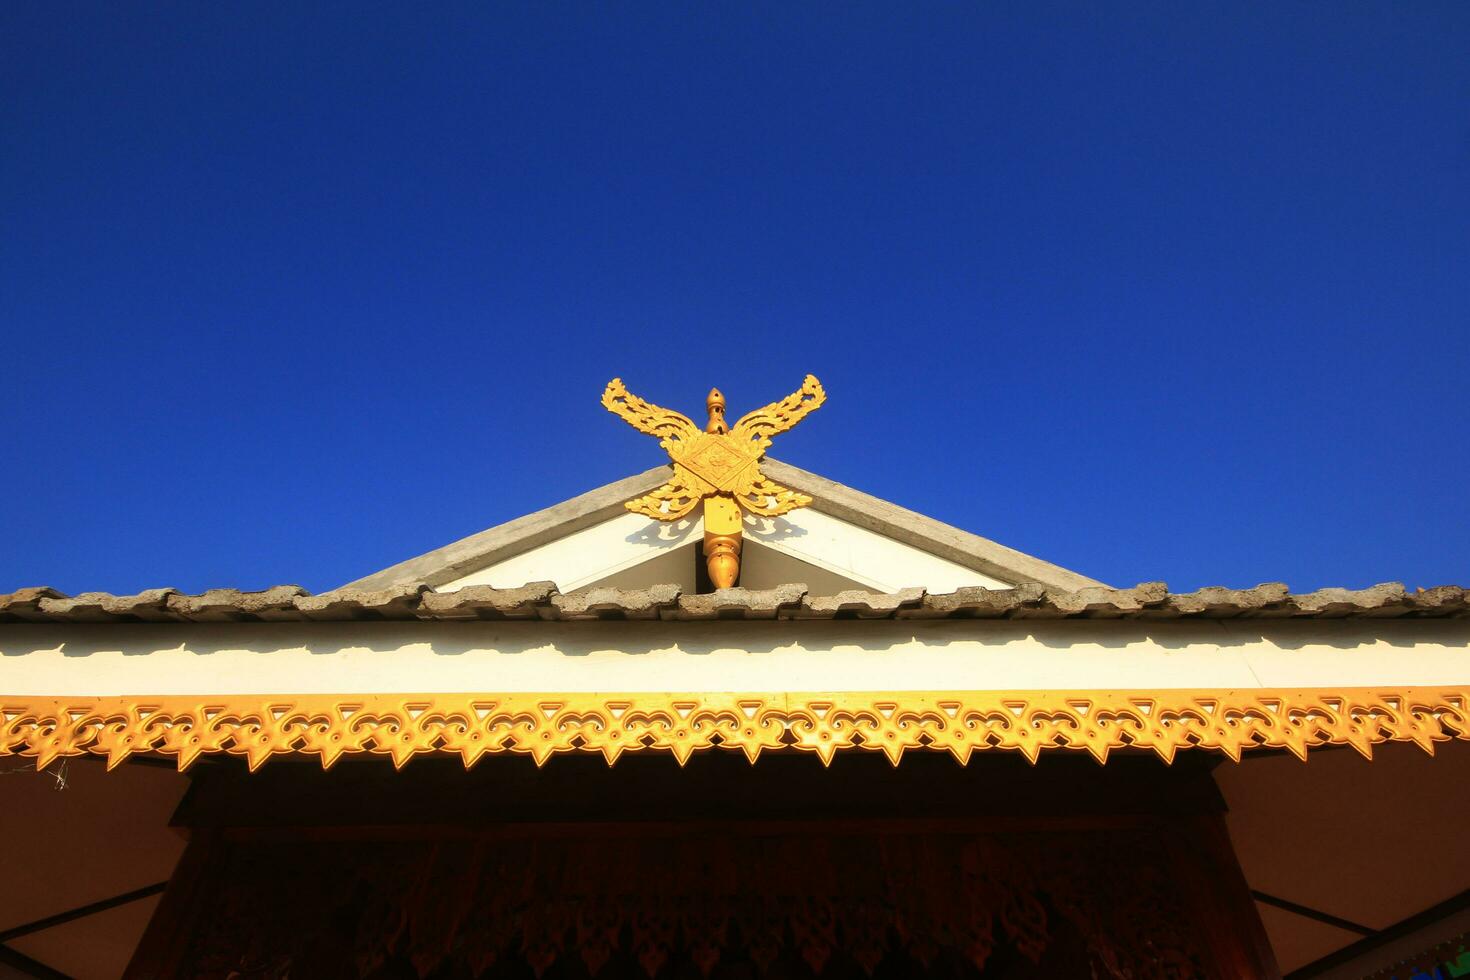 ricevitore antenna è legato con di legno scultura decorato su il tetto di tempio lanna stile nel settentrionale di Tailandia foto